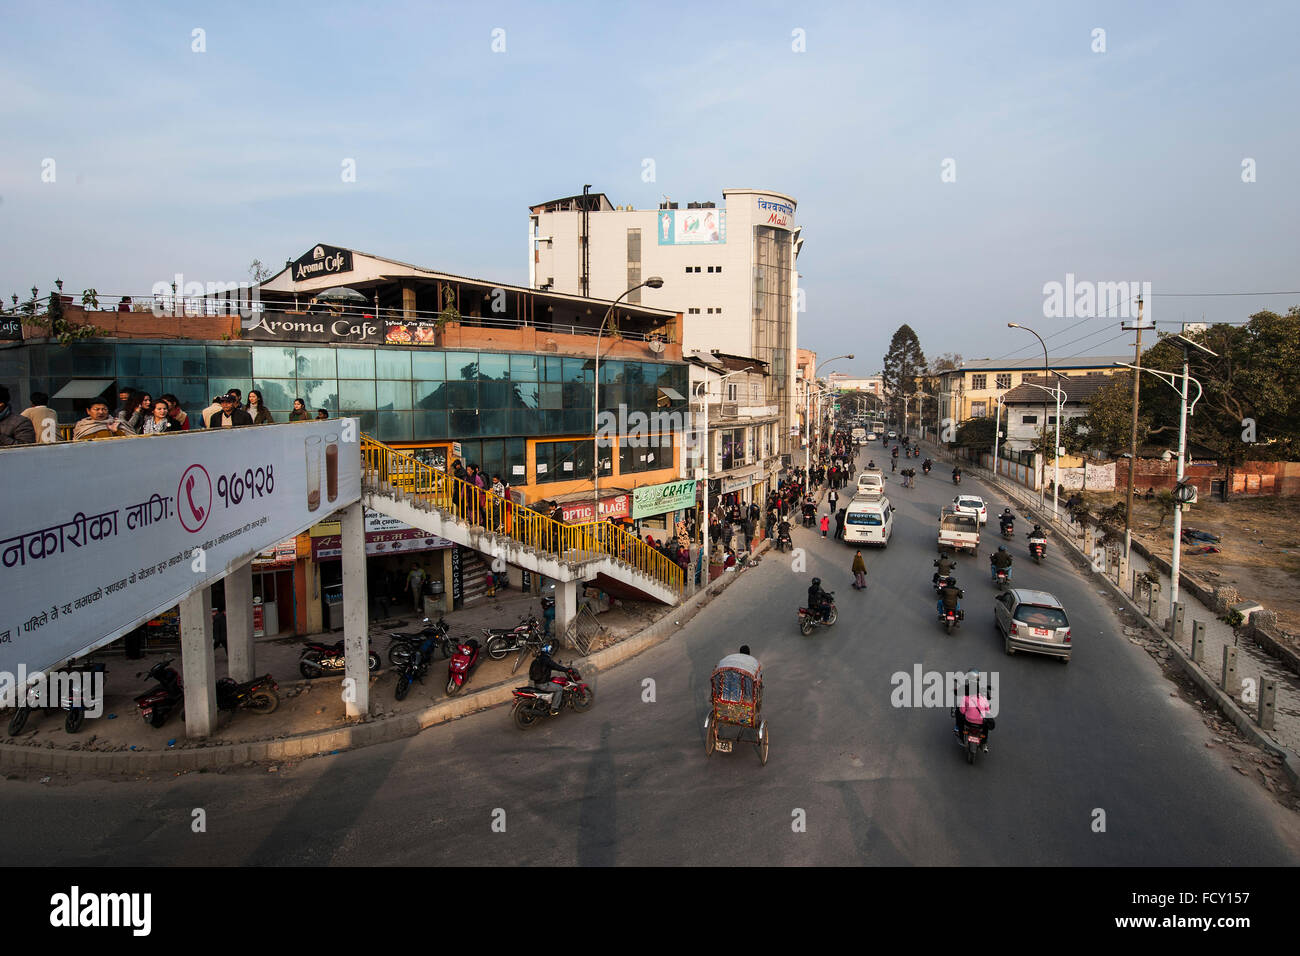 Nepal, Kathmandu, daily life Stock Photo